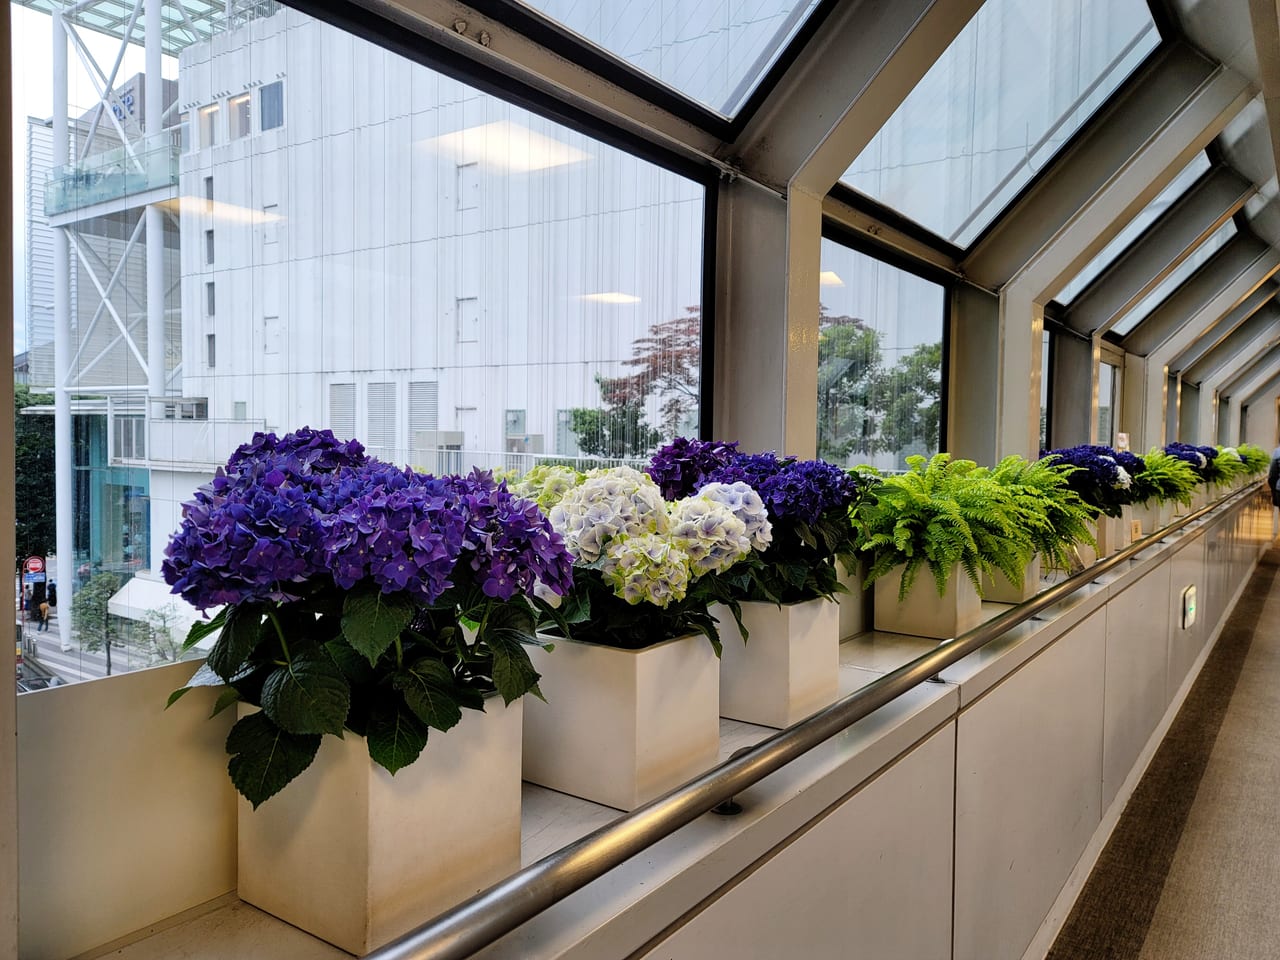 20220609玉川高島屋の渡り廊下に飾ってある紫陽花の鉢植え